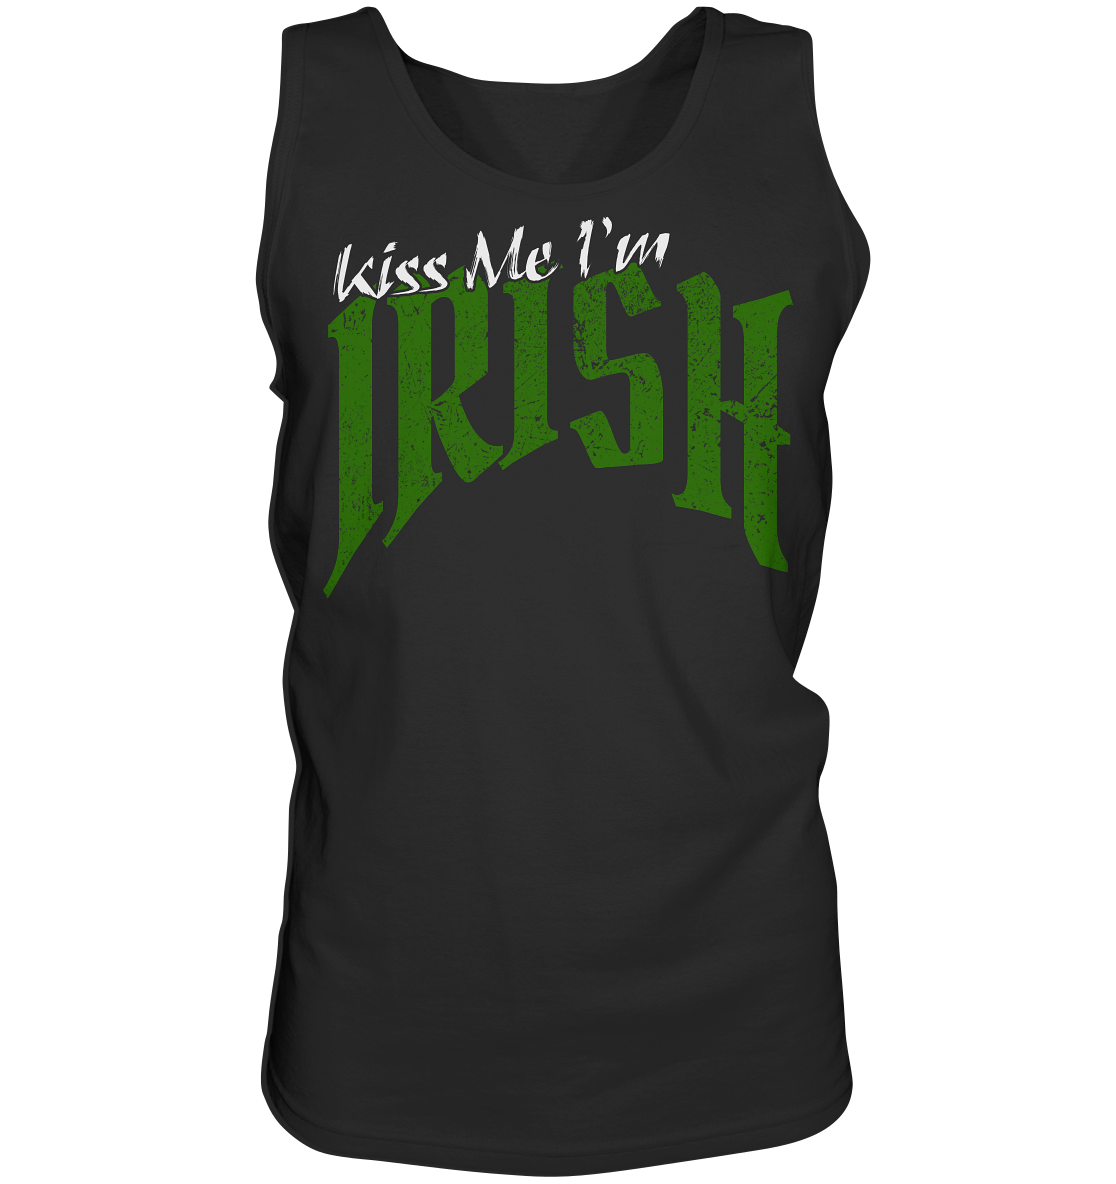 Kiss Me "I'm Irish" - Tank-Top